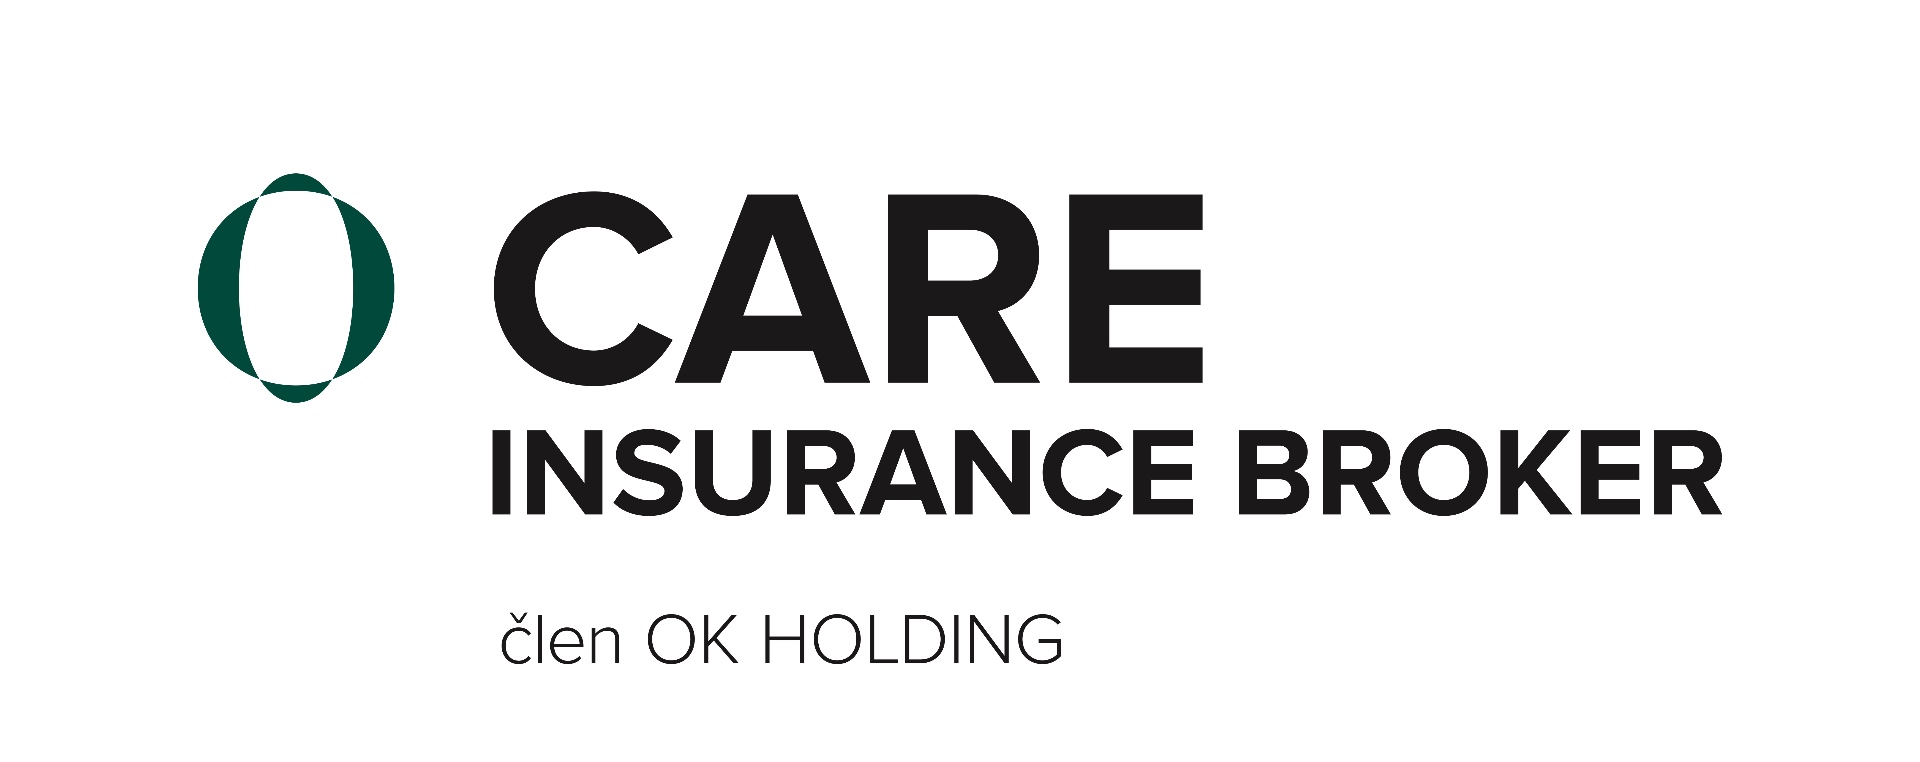 CARE_Insurance_Broker_1-3